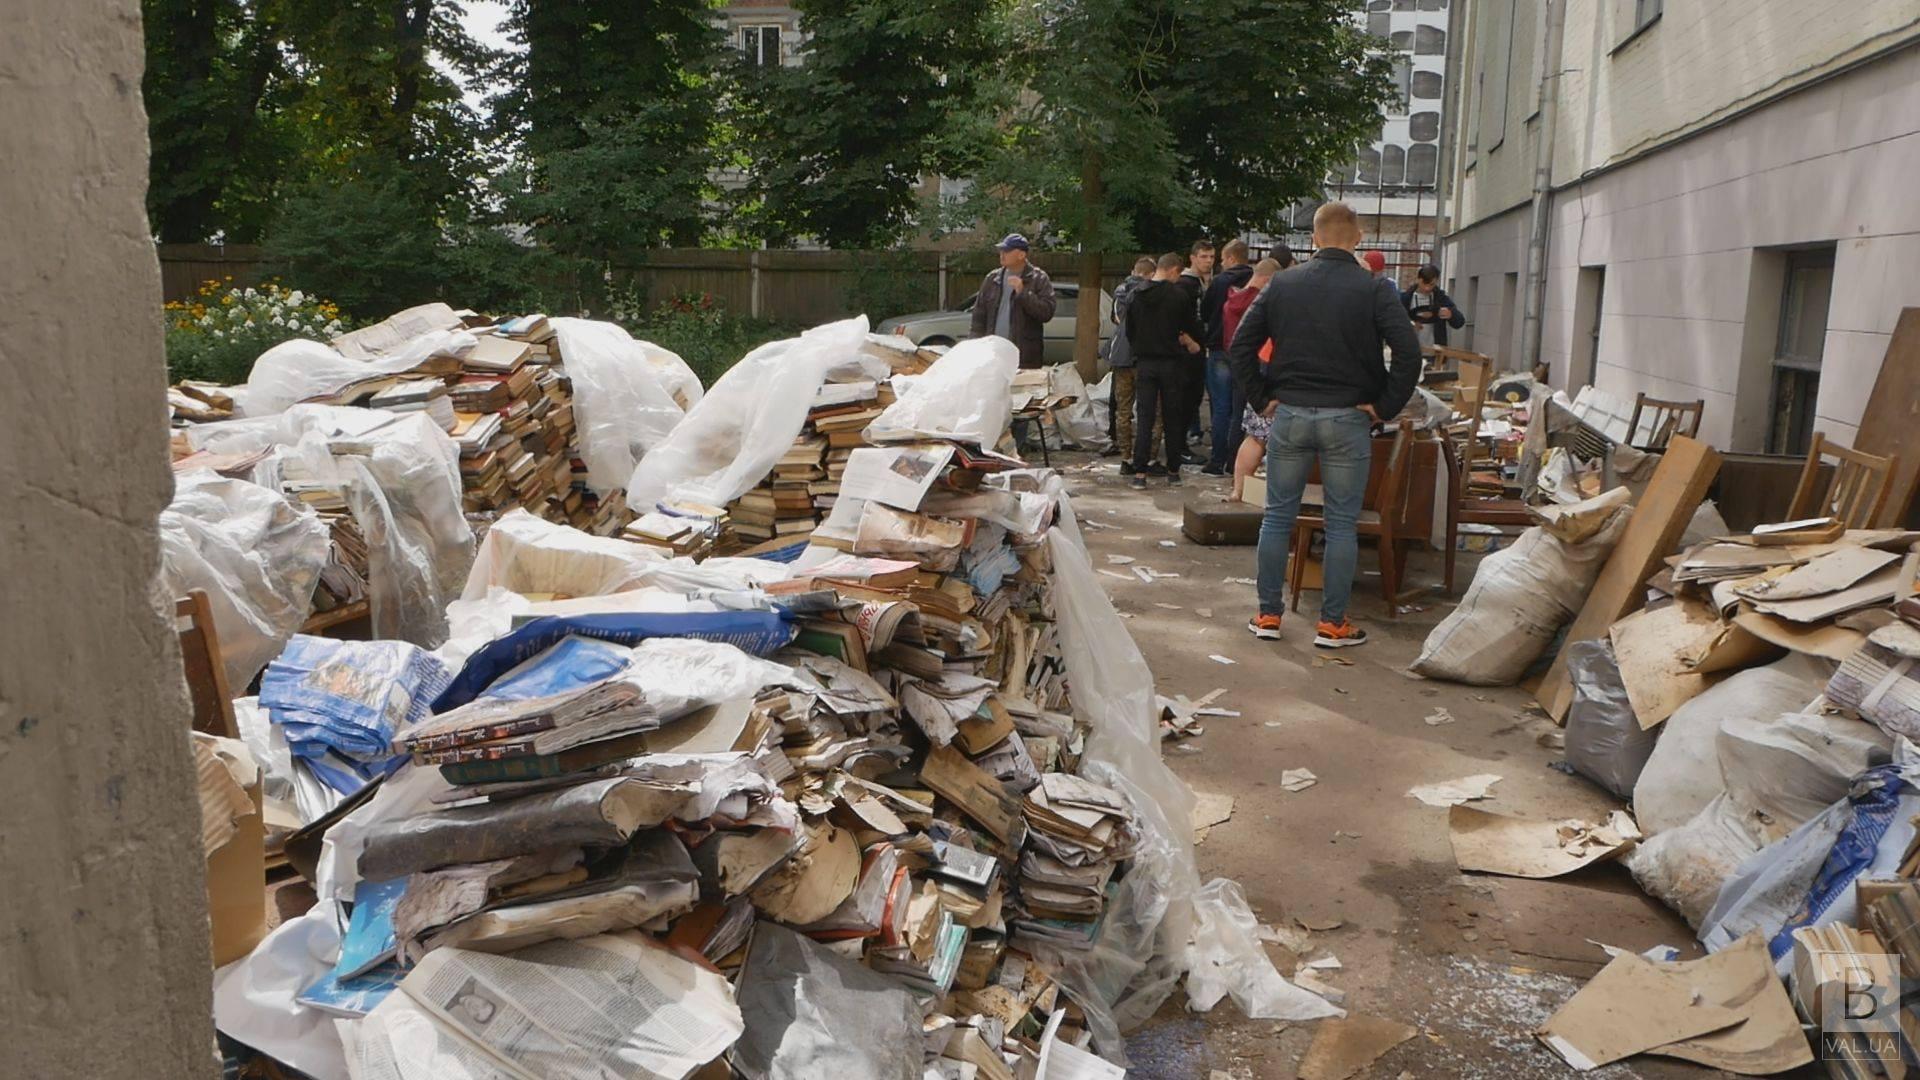 Последствия непогоды: 17 тысяч книг потеряла библиотека Короленко после летних ливней ВИДЕО